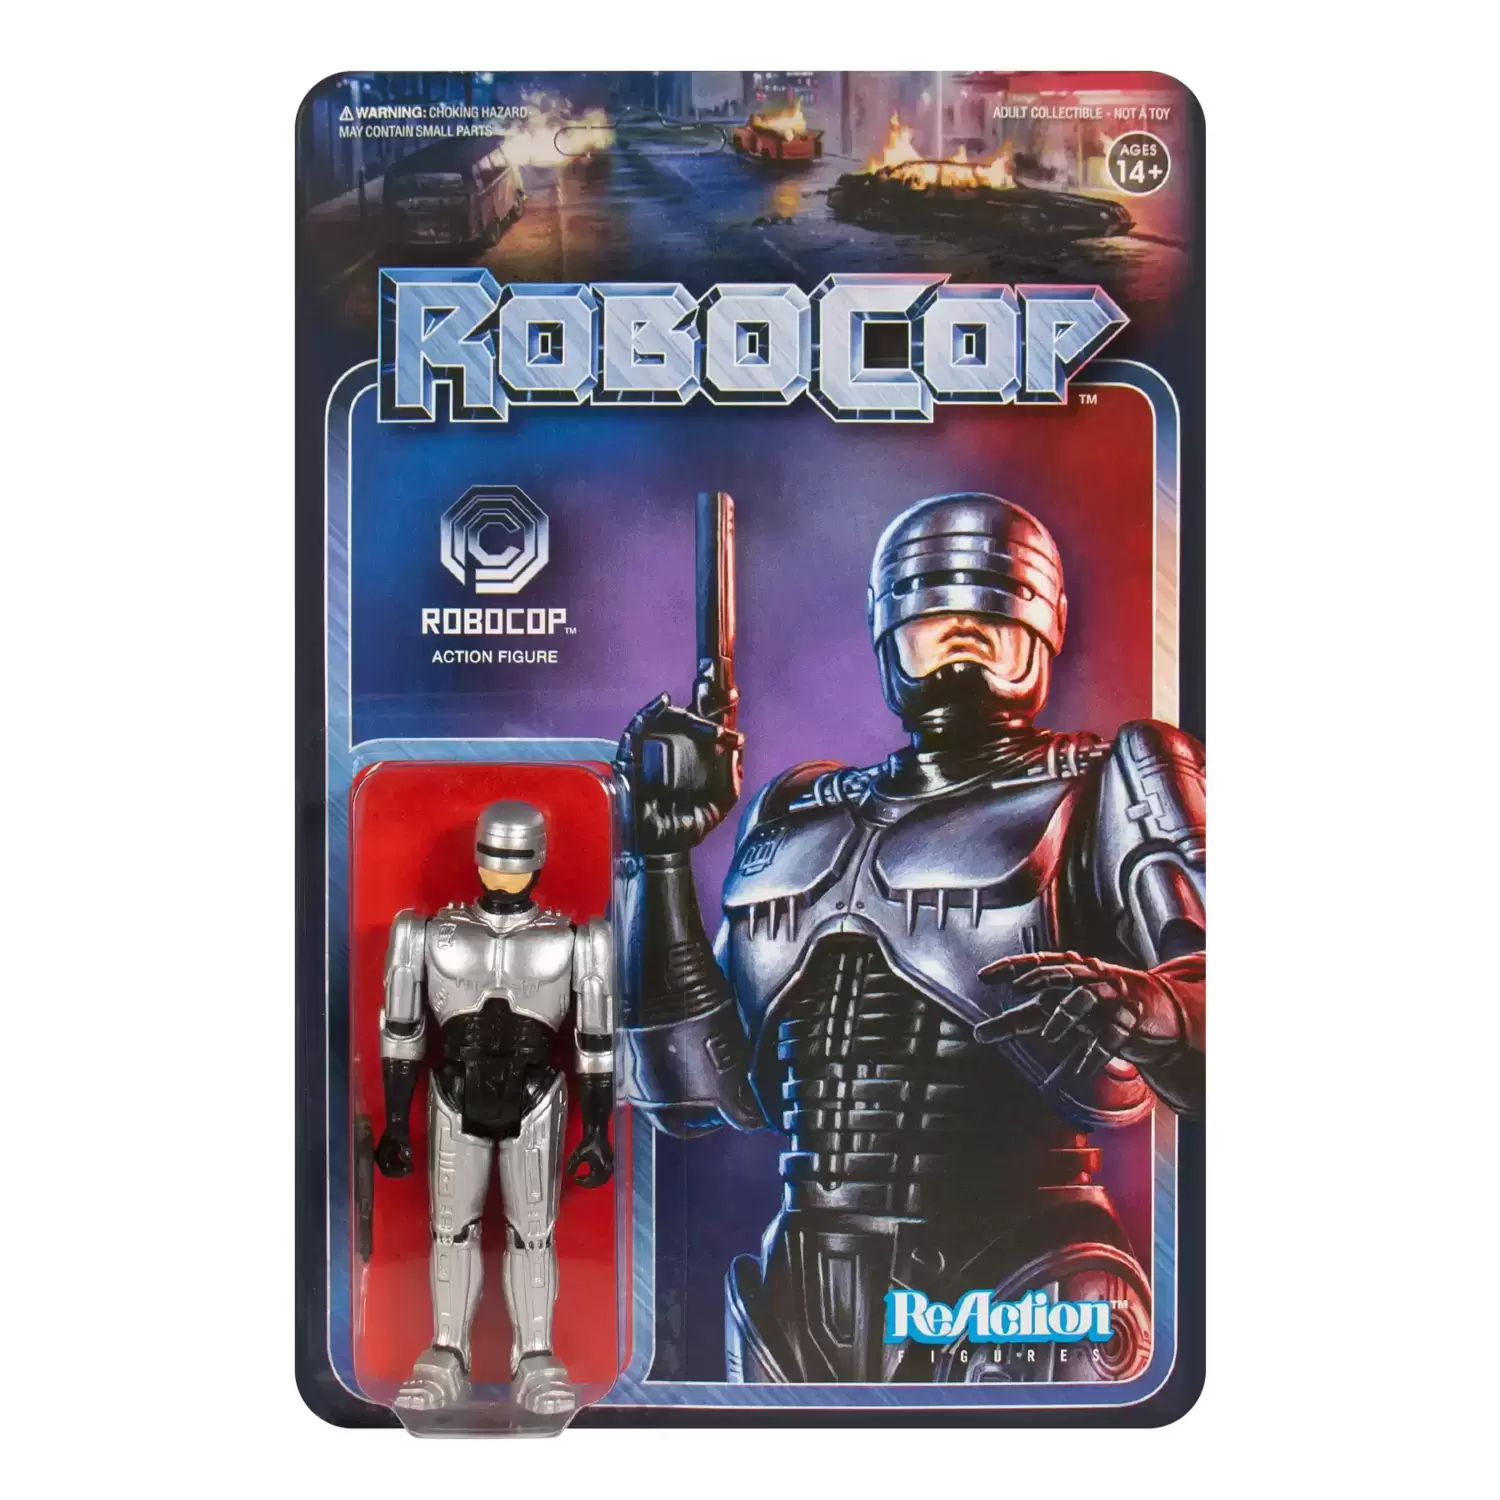 ReAction Figures - Robocop - Robocop